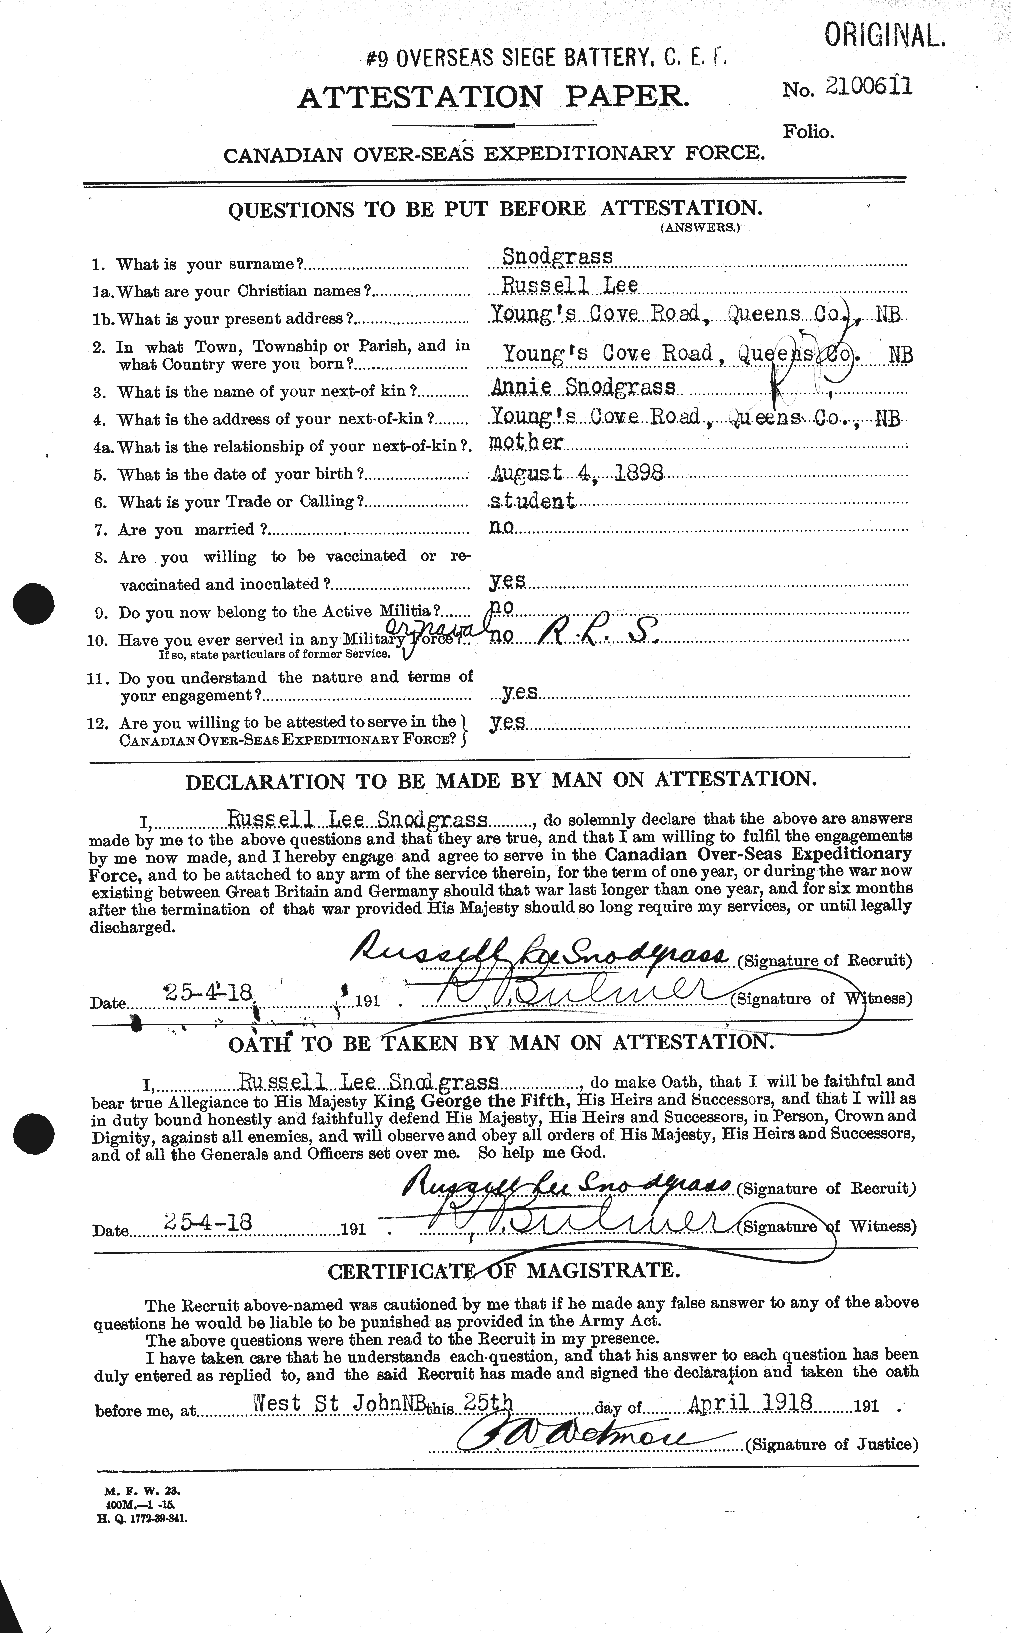 Dossiers du Personnel de la Première Guerre mondiale - CEC 109430a